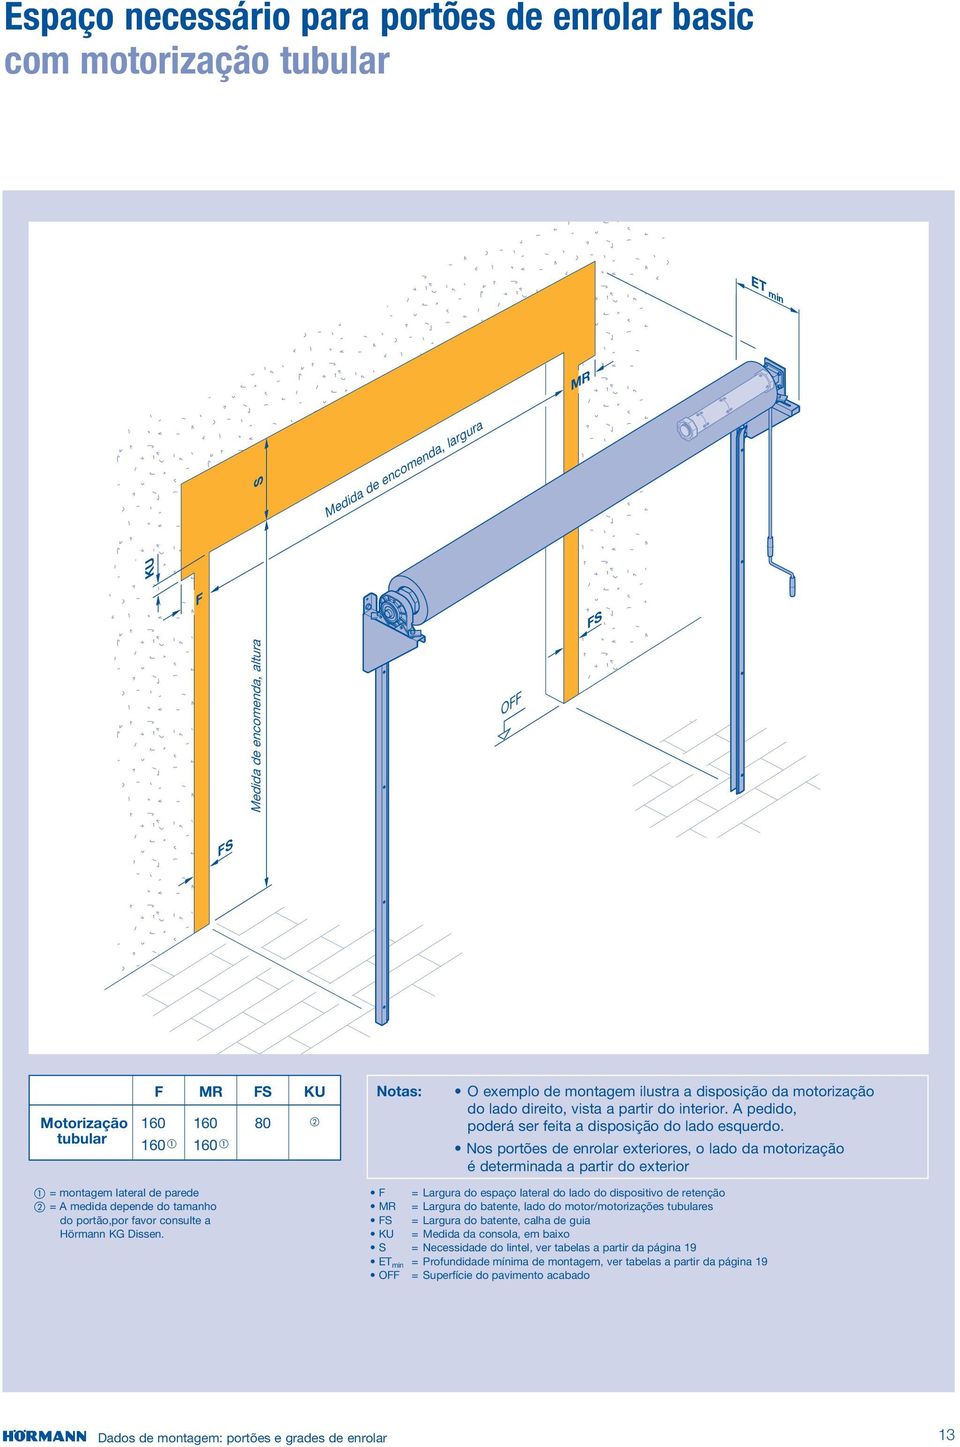 Nos portões de enrolar exteriores, o lado da motorização é determinada a partir do exterior = montagem lateral de parede = A medida depende do tamanho do,por favor consulte a Hörmann KG Dissen.